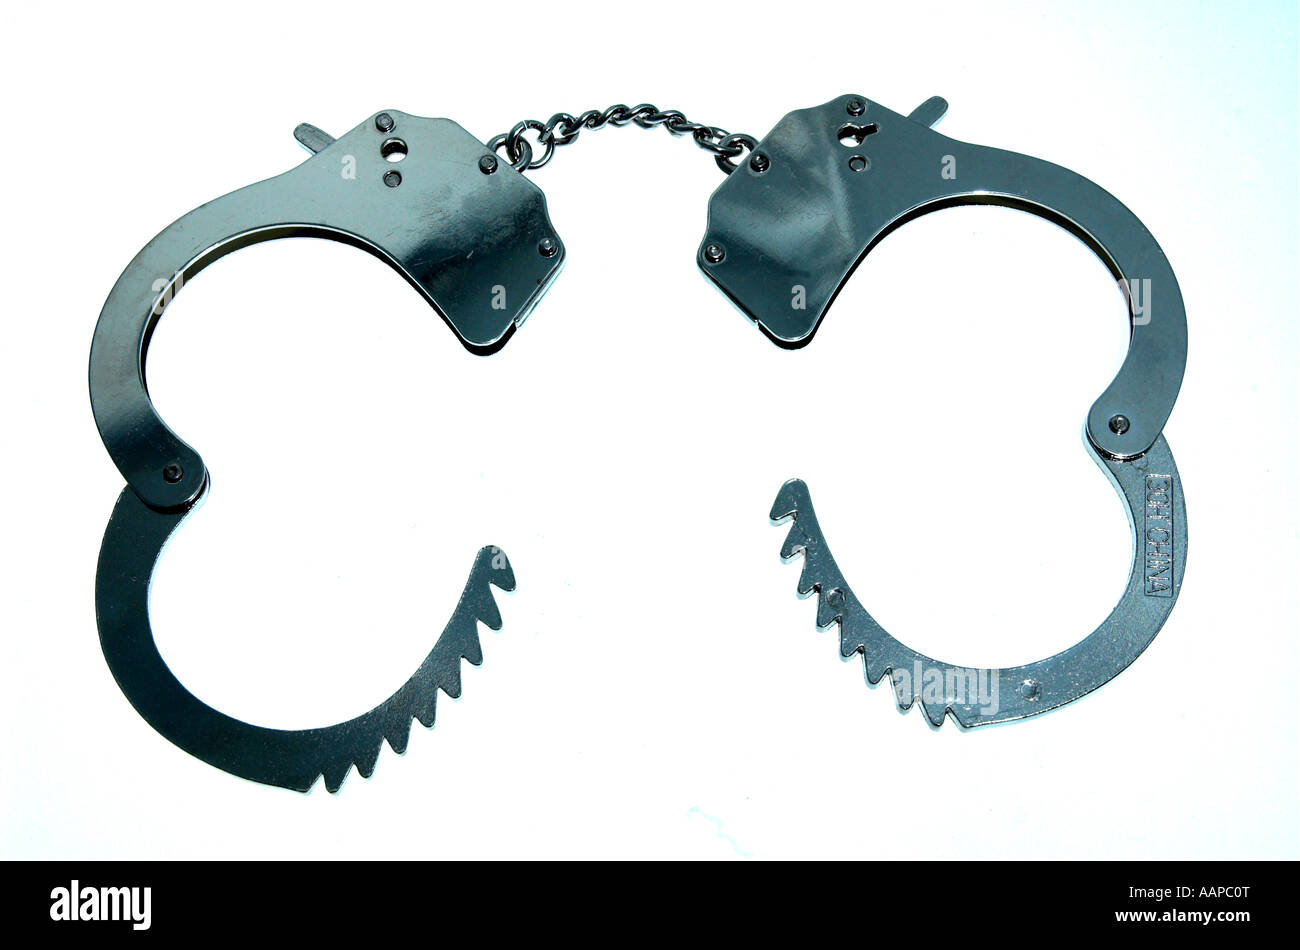 Open Handcuffs Png